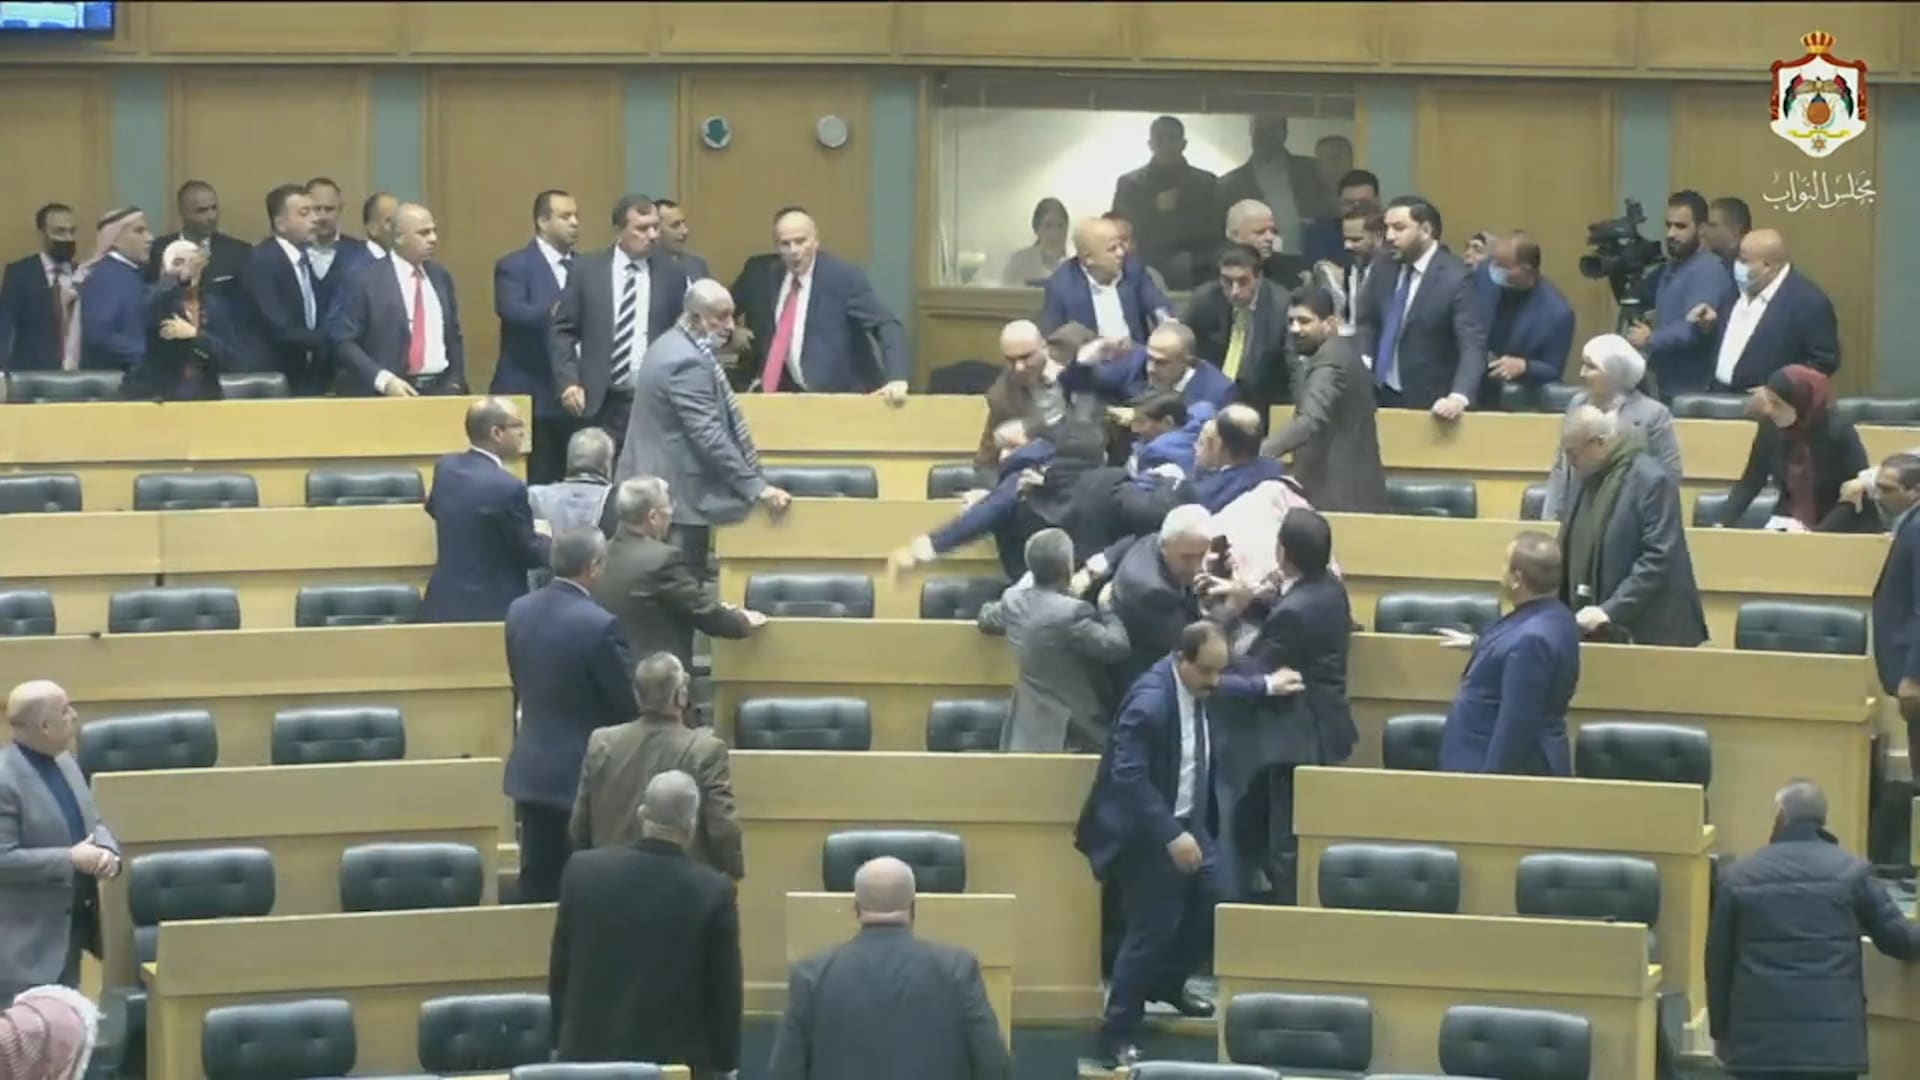 فوضى وعراك بالأيدي وشتائم في البرلمان الأردني خلال مناقشة تعديل الدستور